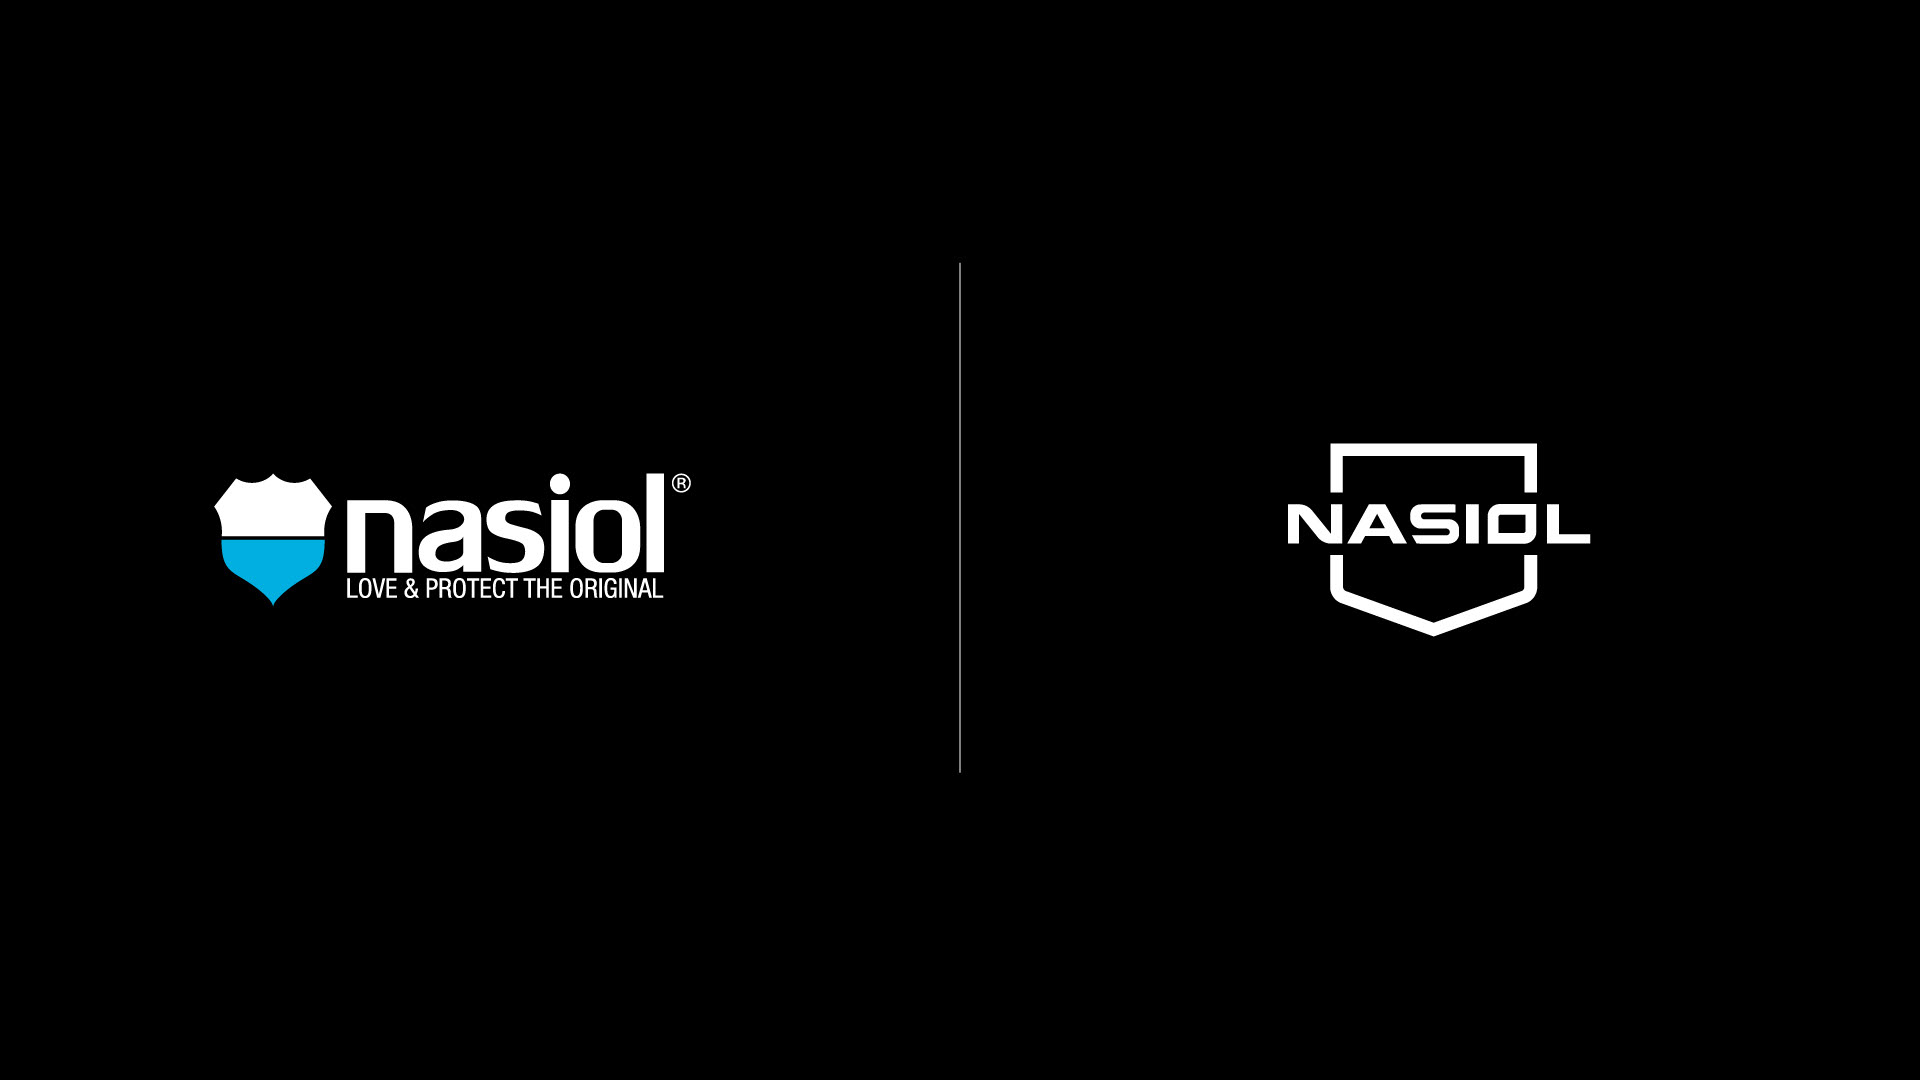 Nasiol redesign leo tavares design de embalagem_Antes e depois